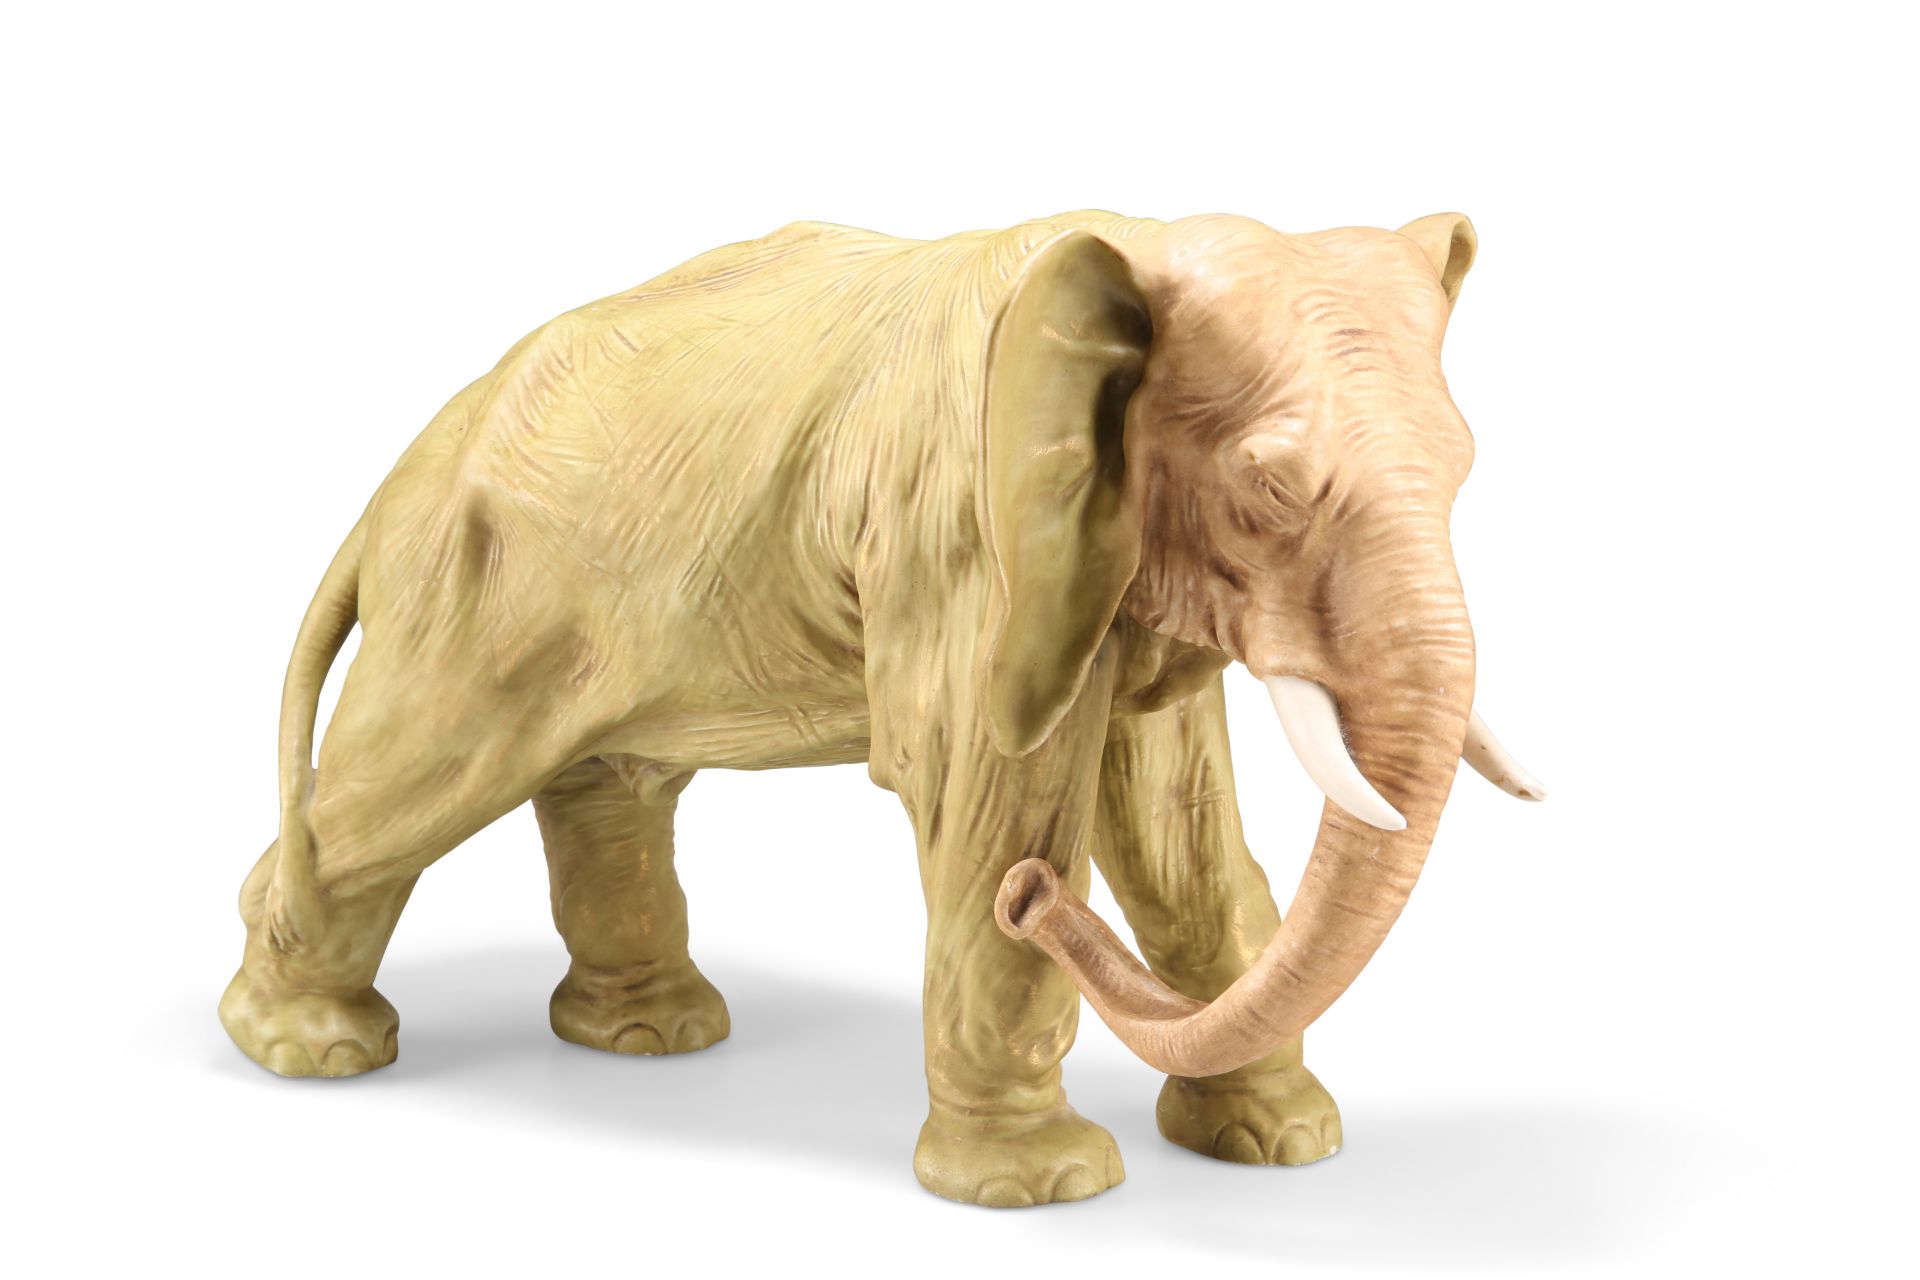 A ROYAL DUX LARGE MODEL OF AN ELEPHANT